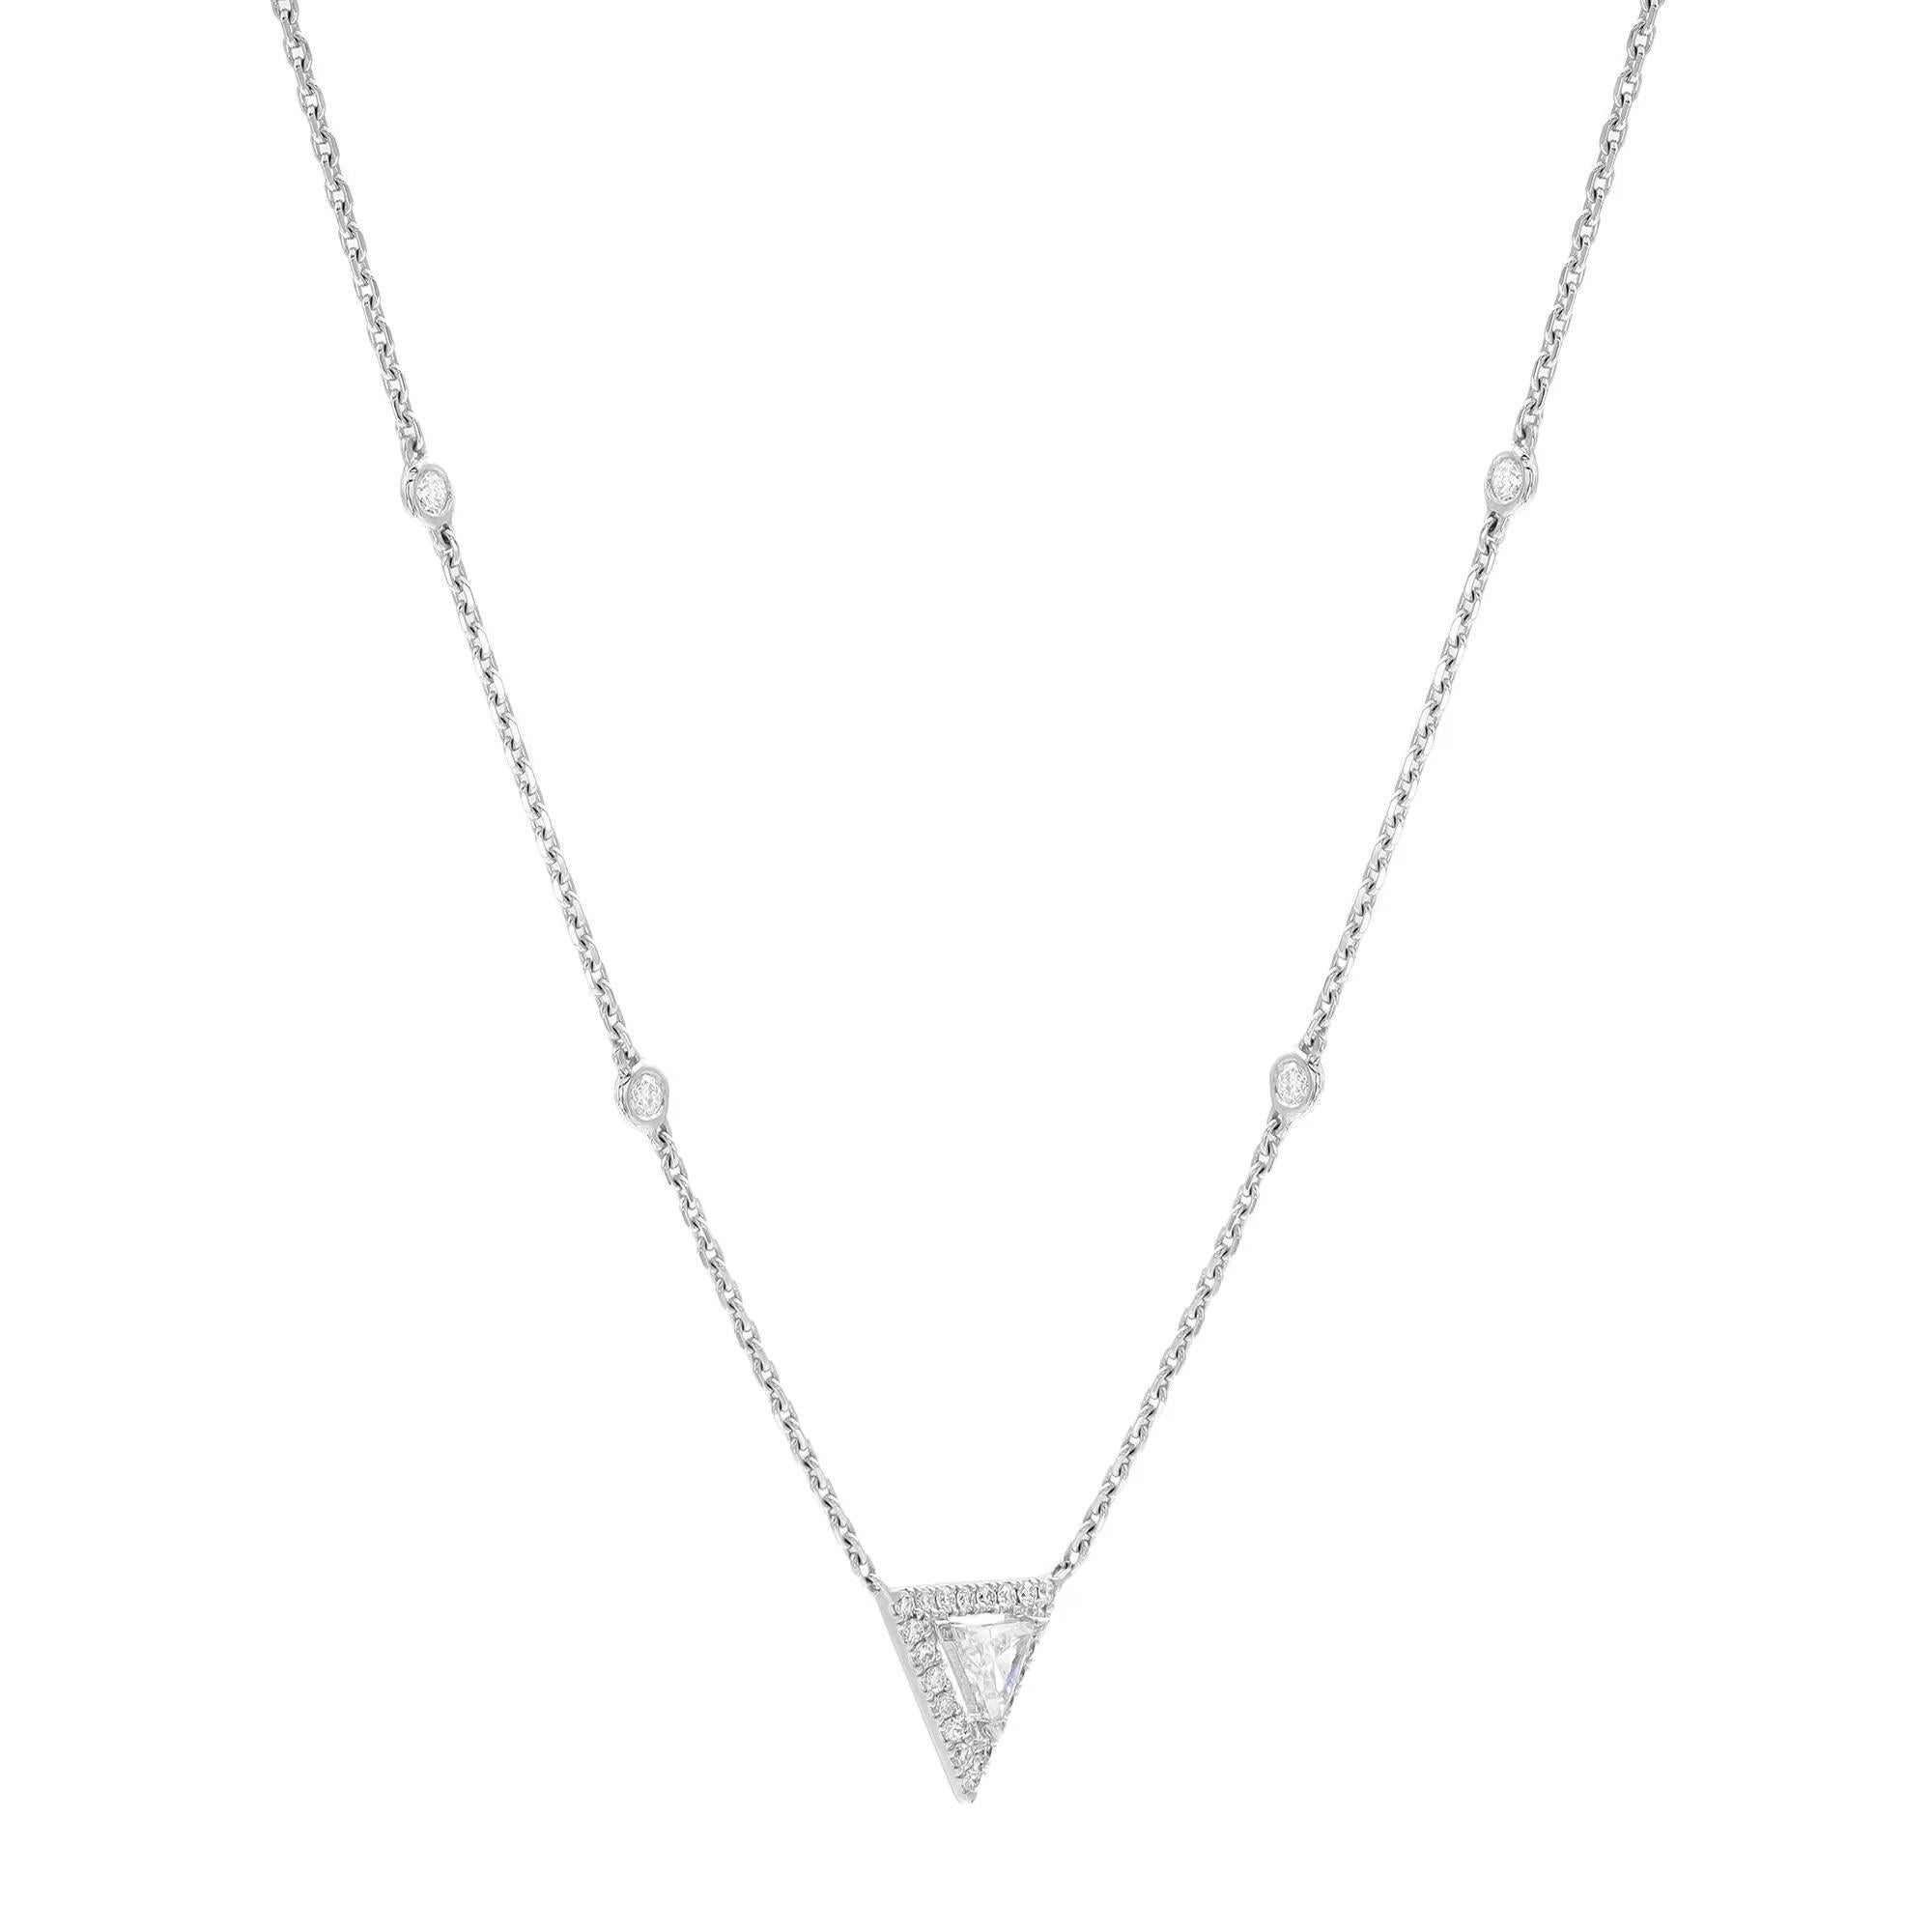 Ce superbe collier pendentif en diamant Messika Thea est d'une beauté et d'une brillance exceptionnelles grâce à son diamant triangulaire serti au centre et à son halo de diamants ronds, ainsi qu'à sa chaîne de diamants par mètre qui complète le